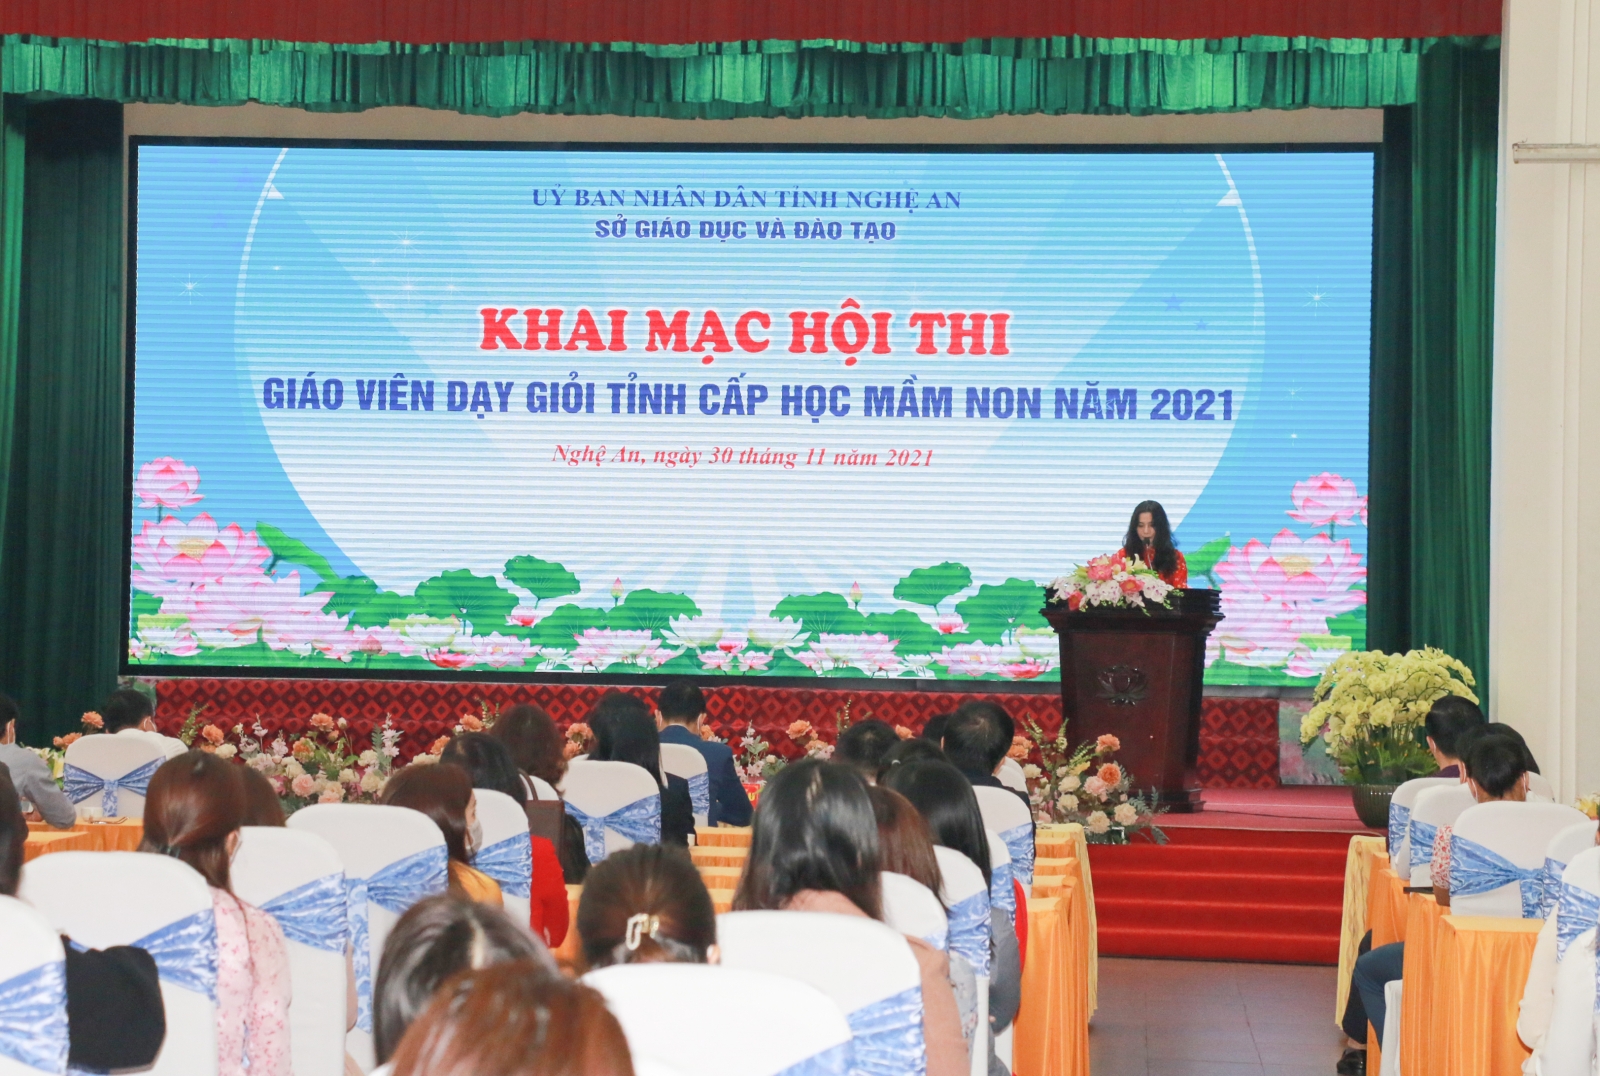 Nghệ An: Khai mạc Hội thi giáo viên giỏi tỉnh cấp mầm non năm 2021 - Ảnh minh hoạ 2